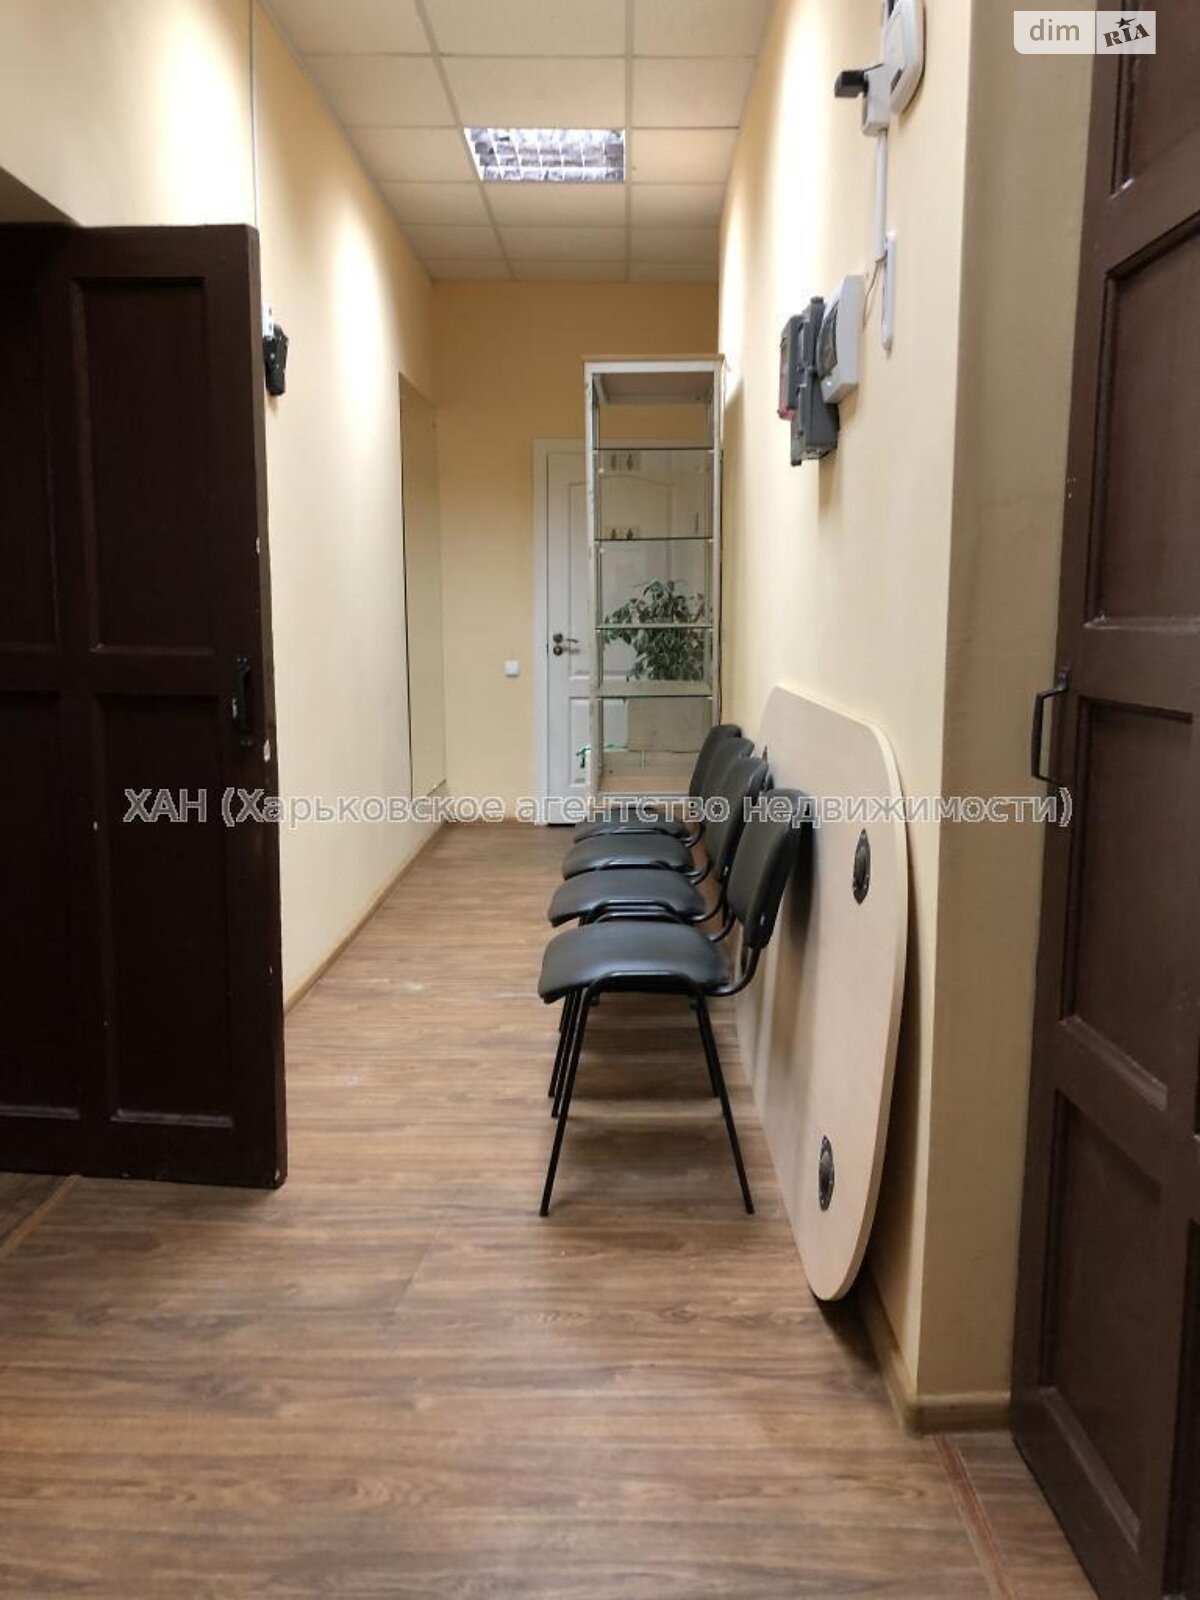 Спеціальне приміщення в Харкові, здам в оренду по Наріманова вулиця, район Рубанівка, ціна: 10 000 грн за об’єкт фото 1